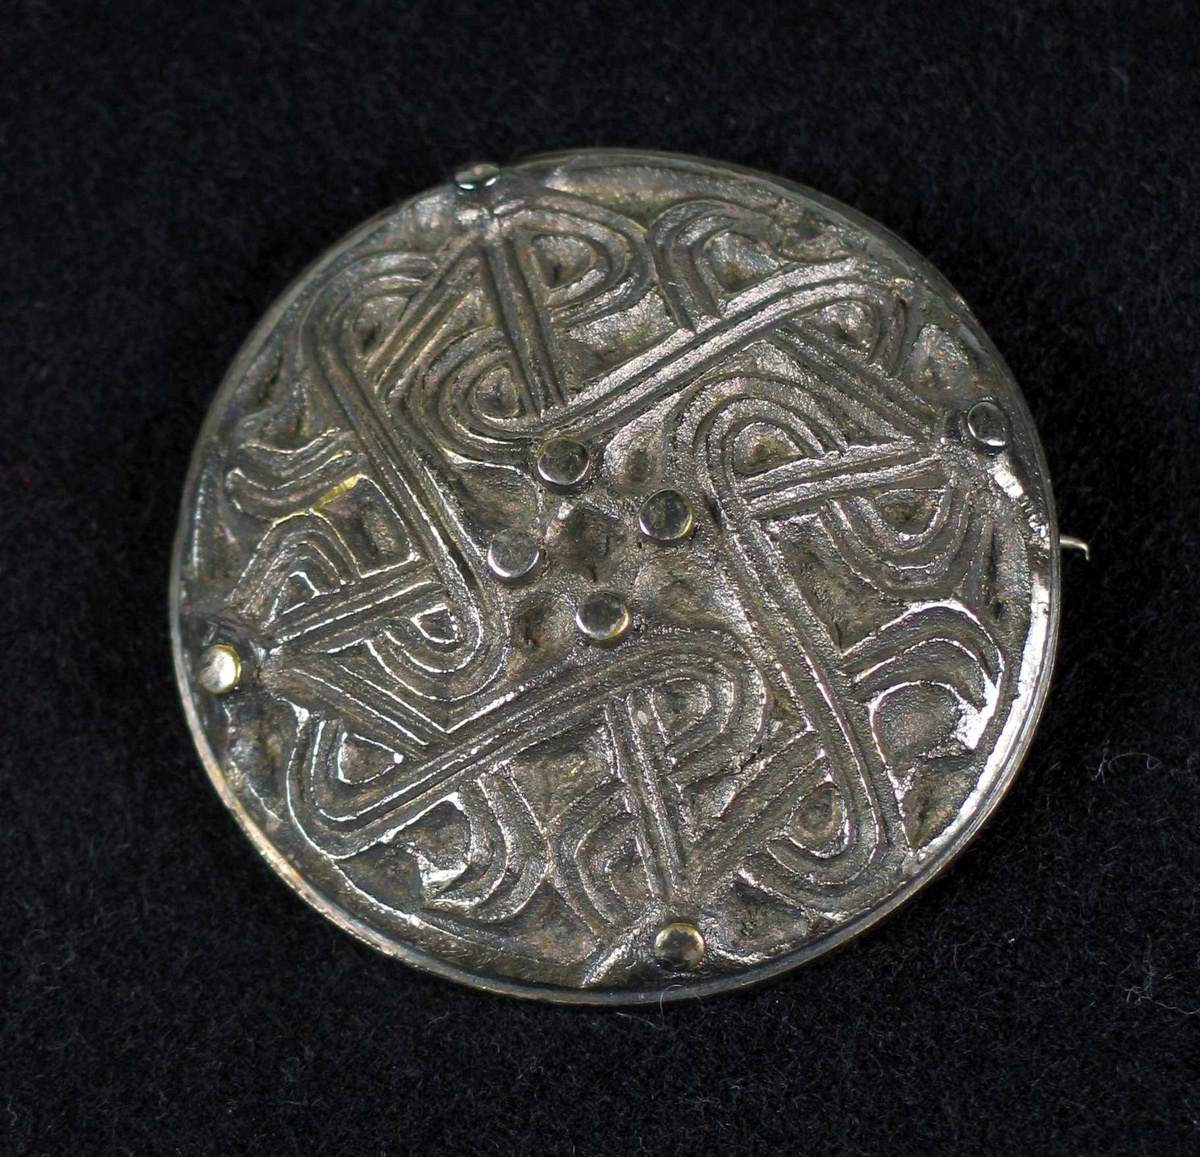 Rund støpt nål i sølv (tinn?) med nordisk mønter.